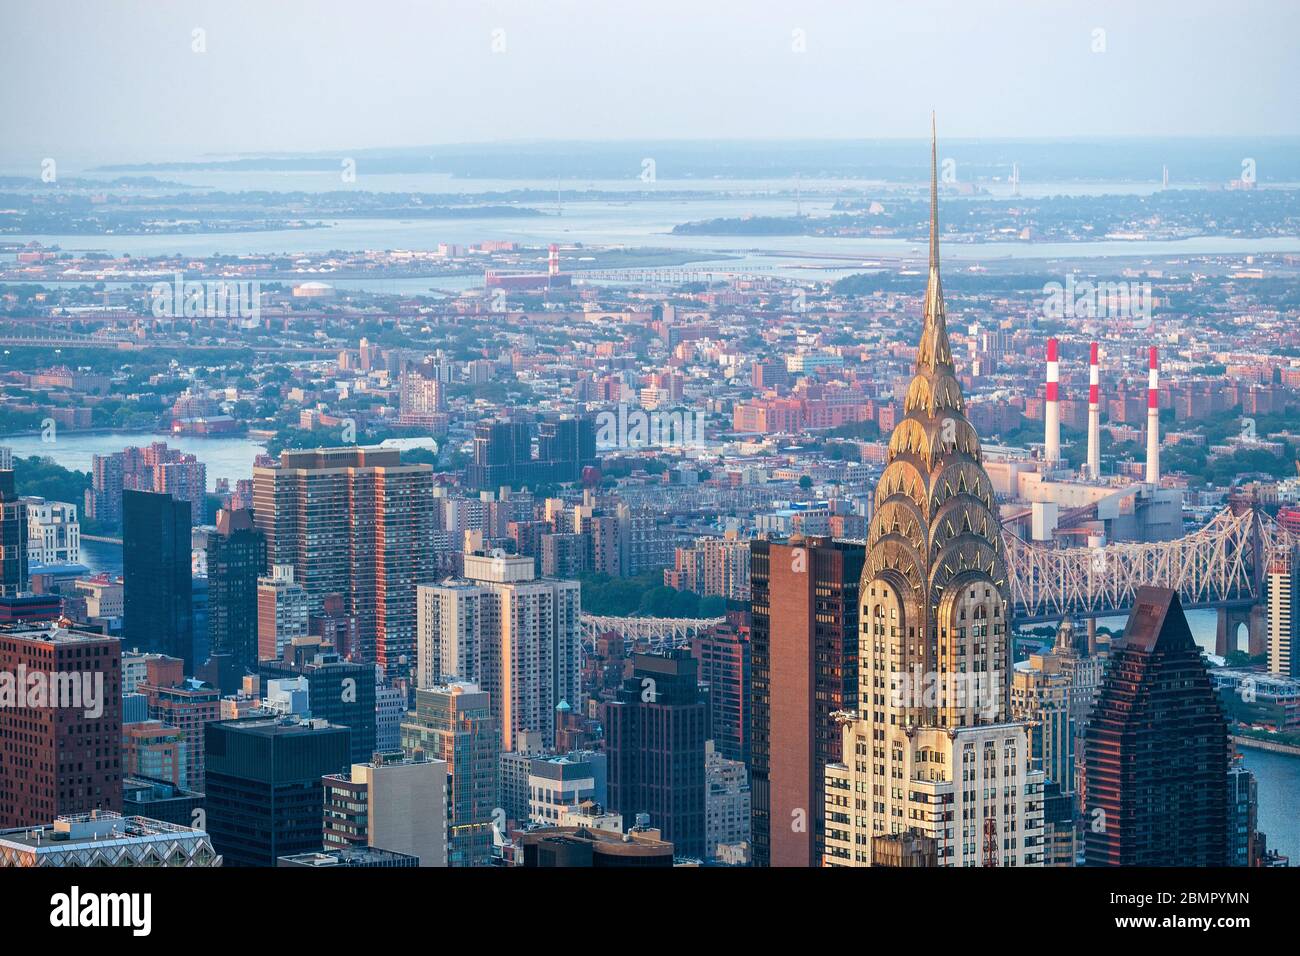 Skyline von New York City mit architektonischem Wahrzeichen Chrysler Building in Manhattan, New York, USA. Stockfoto